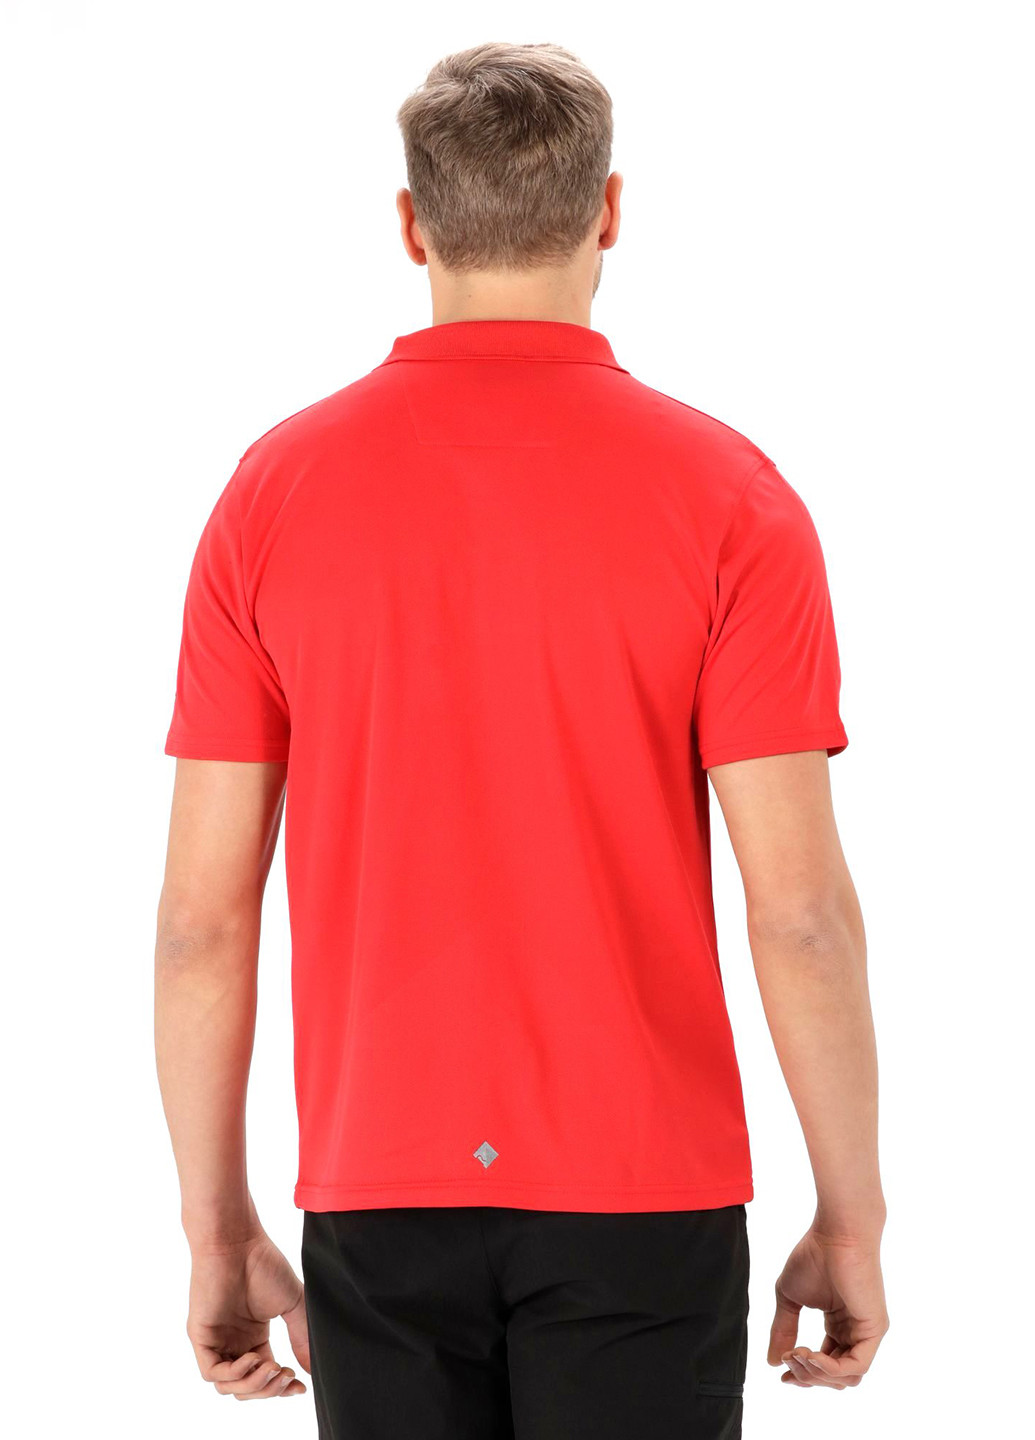 Красная футболка-поло для мужчин Regatta с надписью